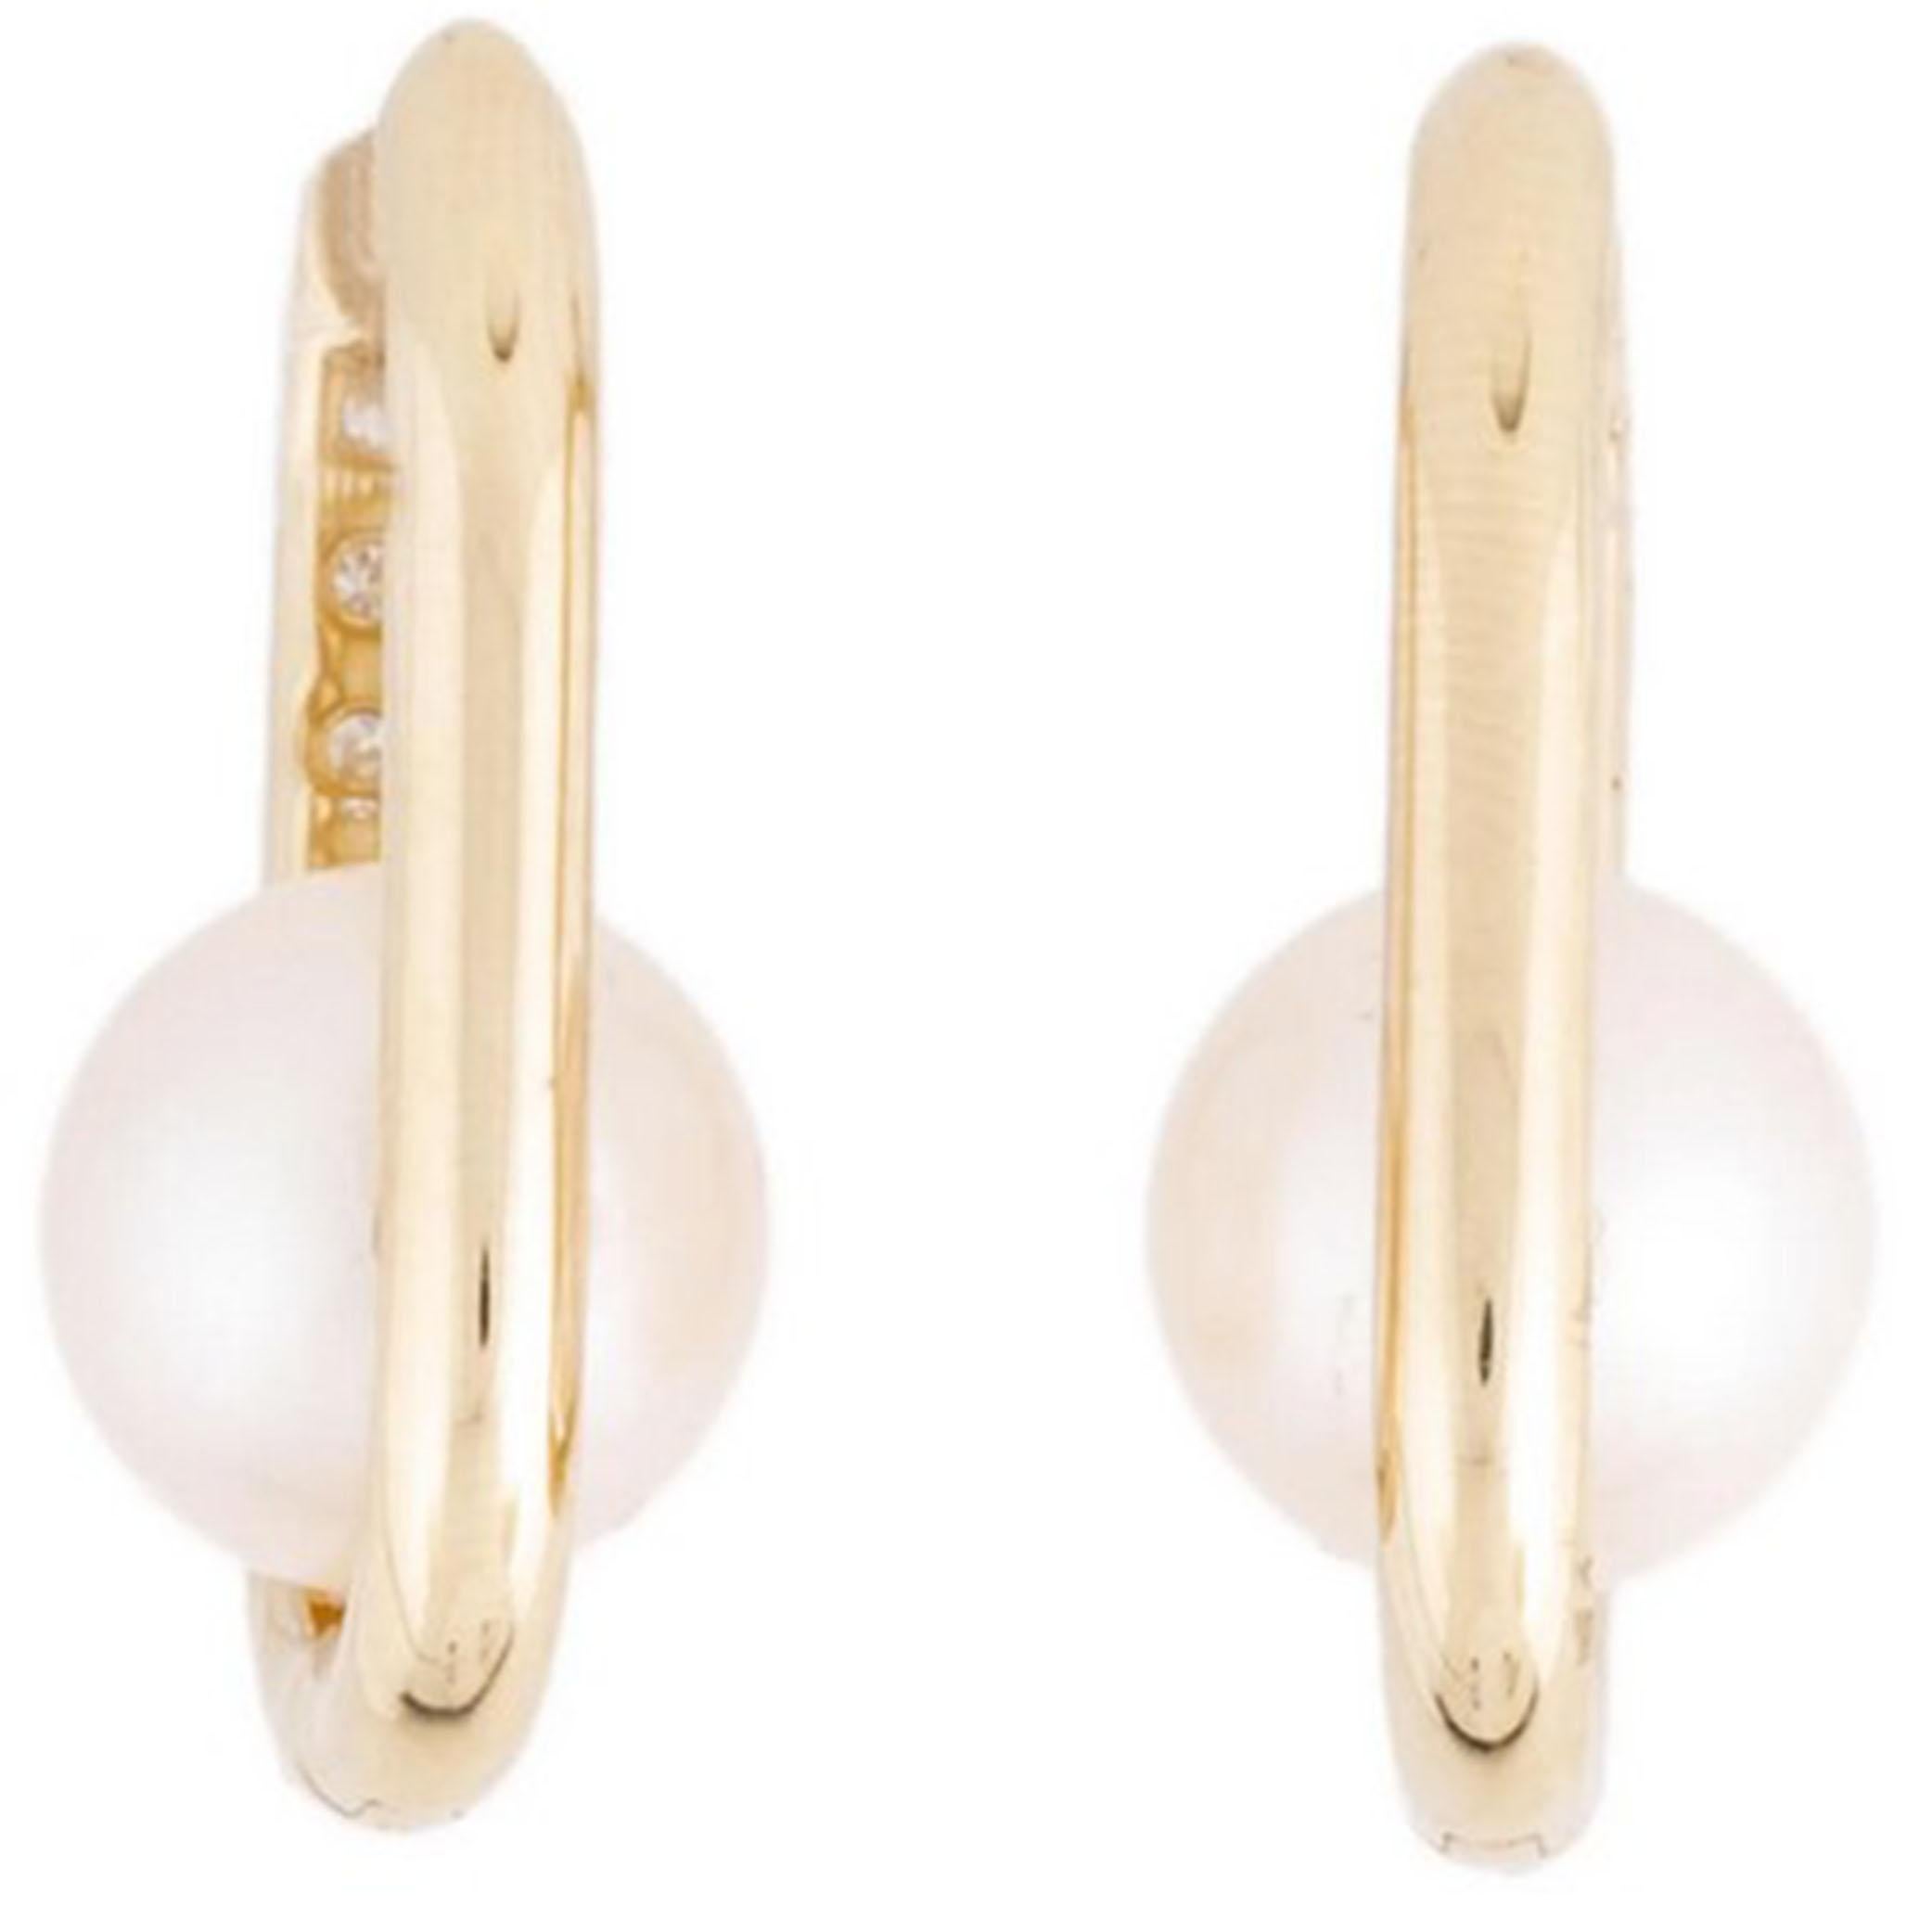 Origine : Japon Japon
Type de perle : Perles Akoya
Taille de la perle : 8,5 - 9,0 MM de diamètre
Perle Couleur : Blanc
Forme de la perle : Ronde 
Surface de la perle : AAA
Éclat de la perle : Gemme AAA
Nacre de perle : Haut
Diamant : 0,20ct
Or :